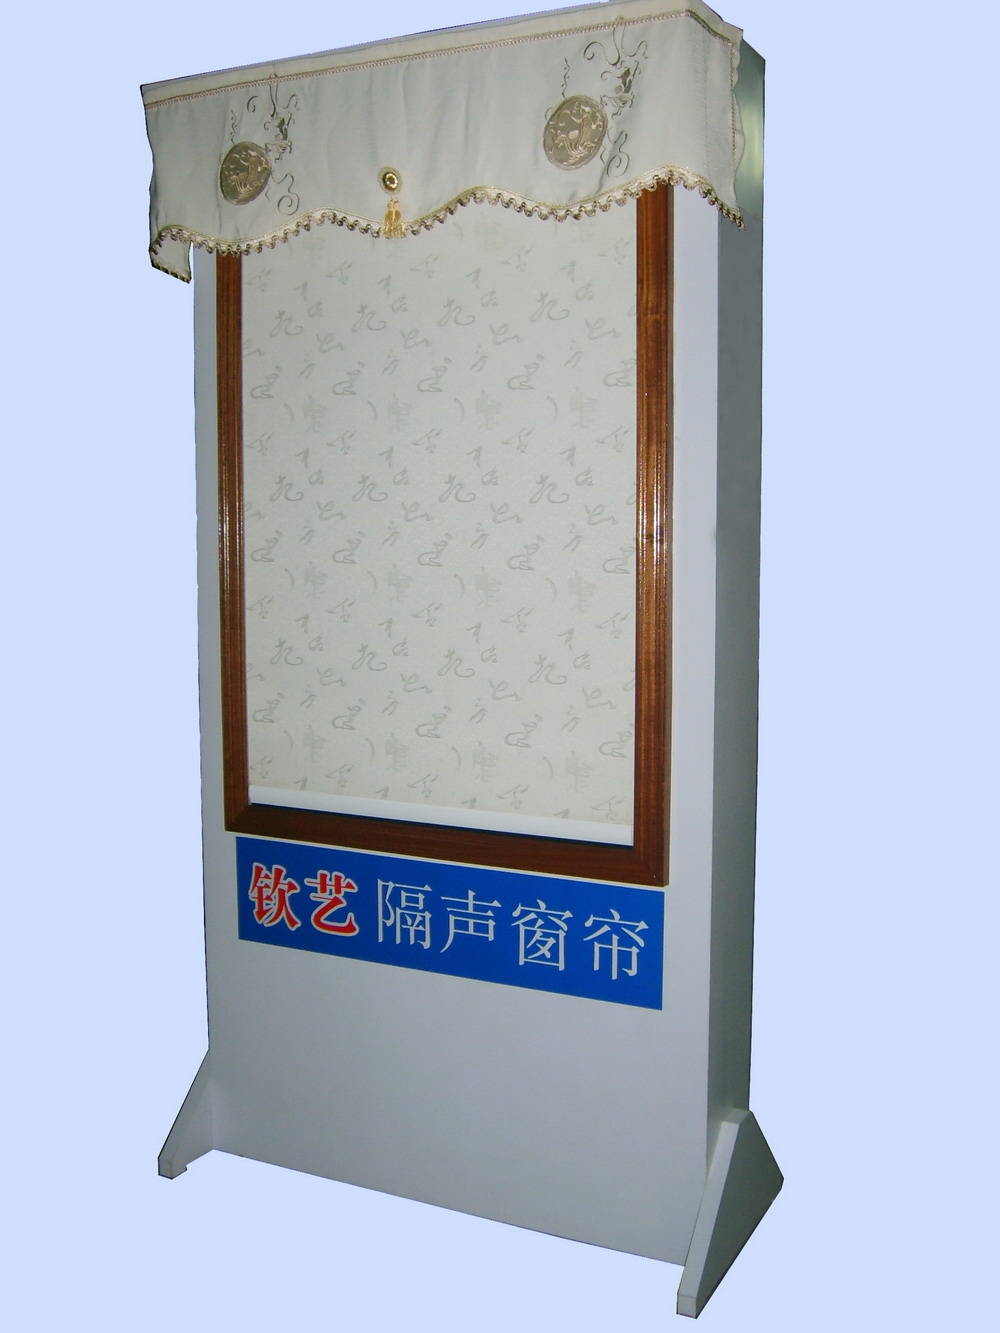 隔声窗帘产品图片,隔声窗帘产品相册 - 广州新